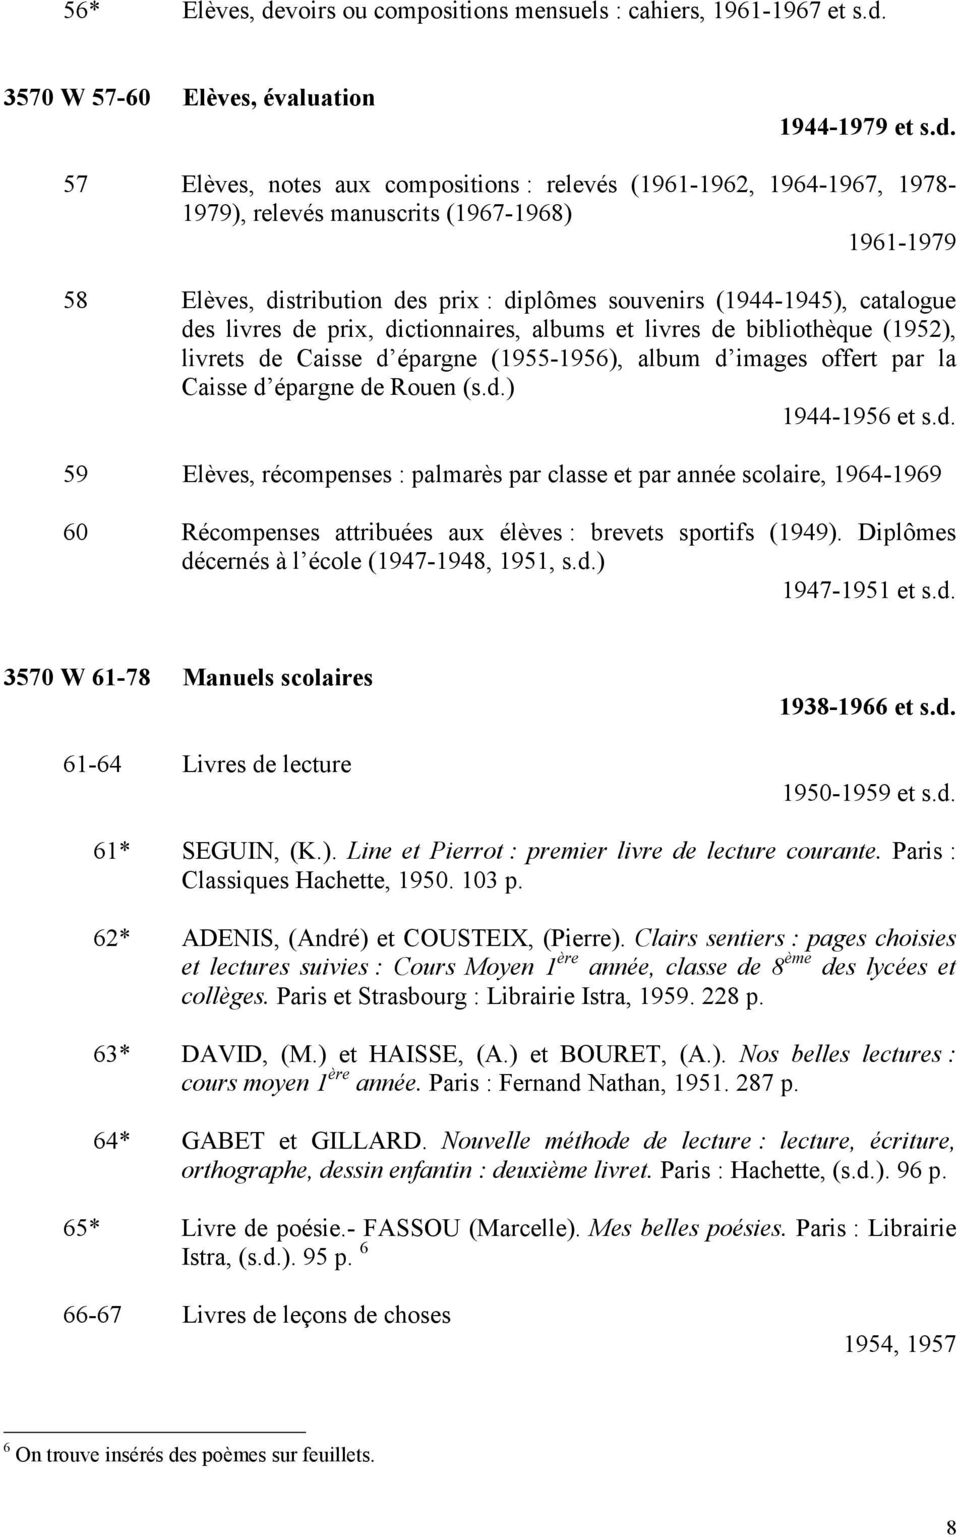 3570 W 57-60 Elèves, évaluation 1944-1979 et s.d.